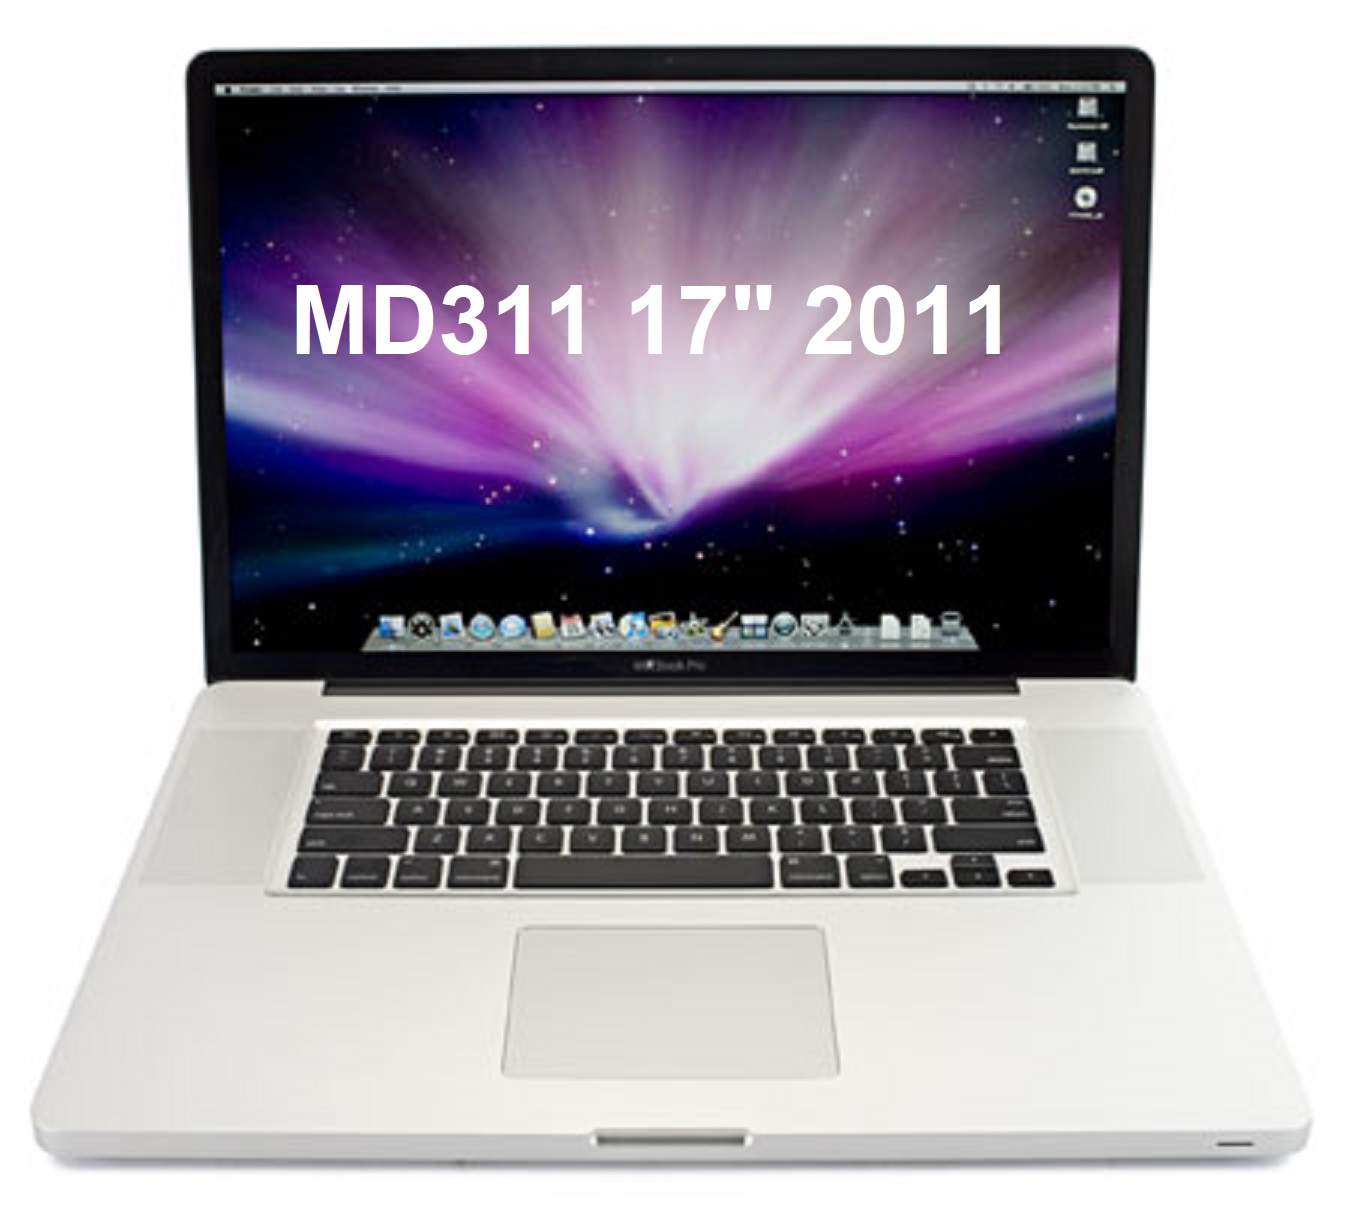 MacBook Pro 17-Inch Late 201 i7-2760QM 2.4 GHz RAM 8GB HDD 1TB MD311 MacBookPro8,3 A1297 -EMC 2564